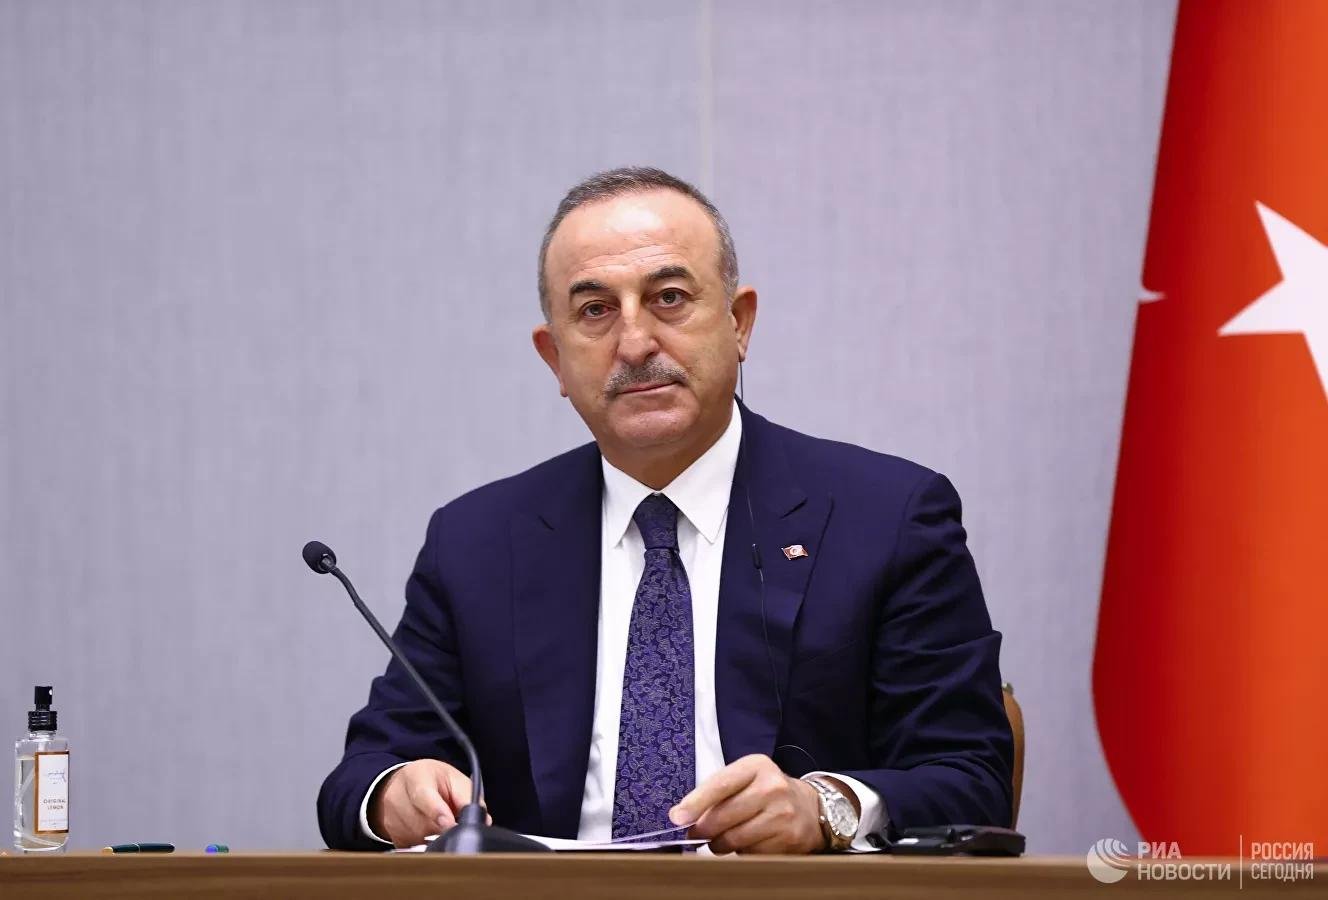 Այսօր անգամ ՀՀ վարչապետն է հայտարարում Ադրբեջանի տարածքային ամբողջականությունը, այդ թվում՝ Ղարաբաղը, ճանաչելու պատրաստակամության մասին. Չավուշօղլու